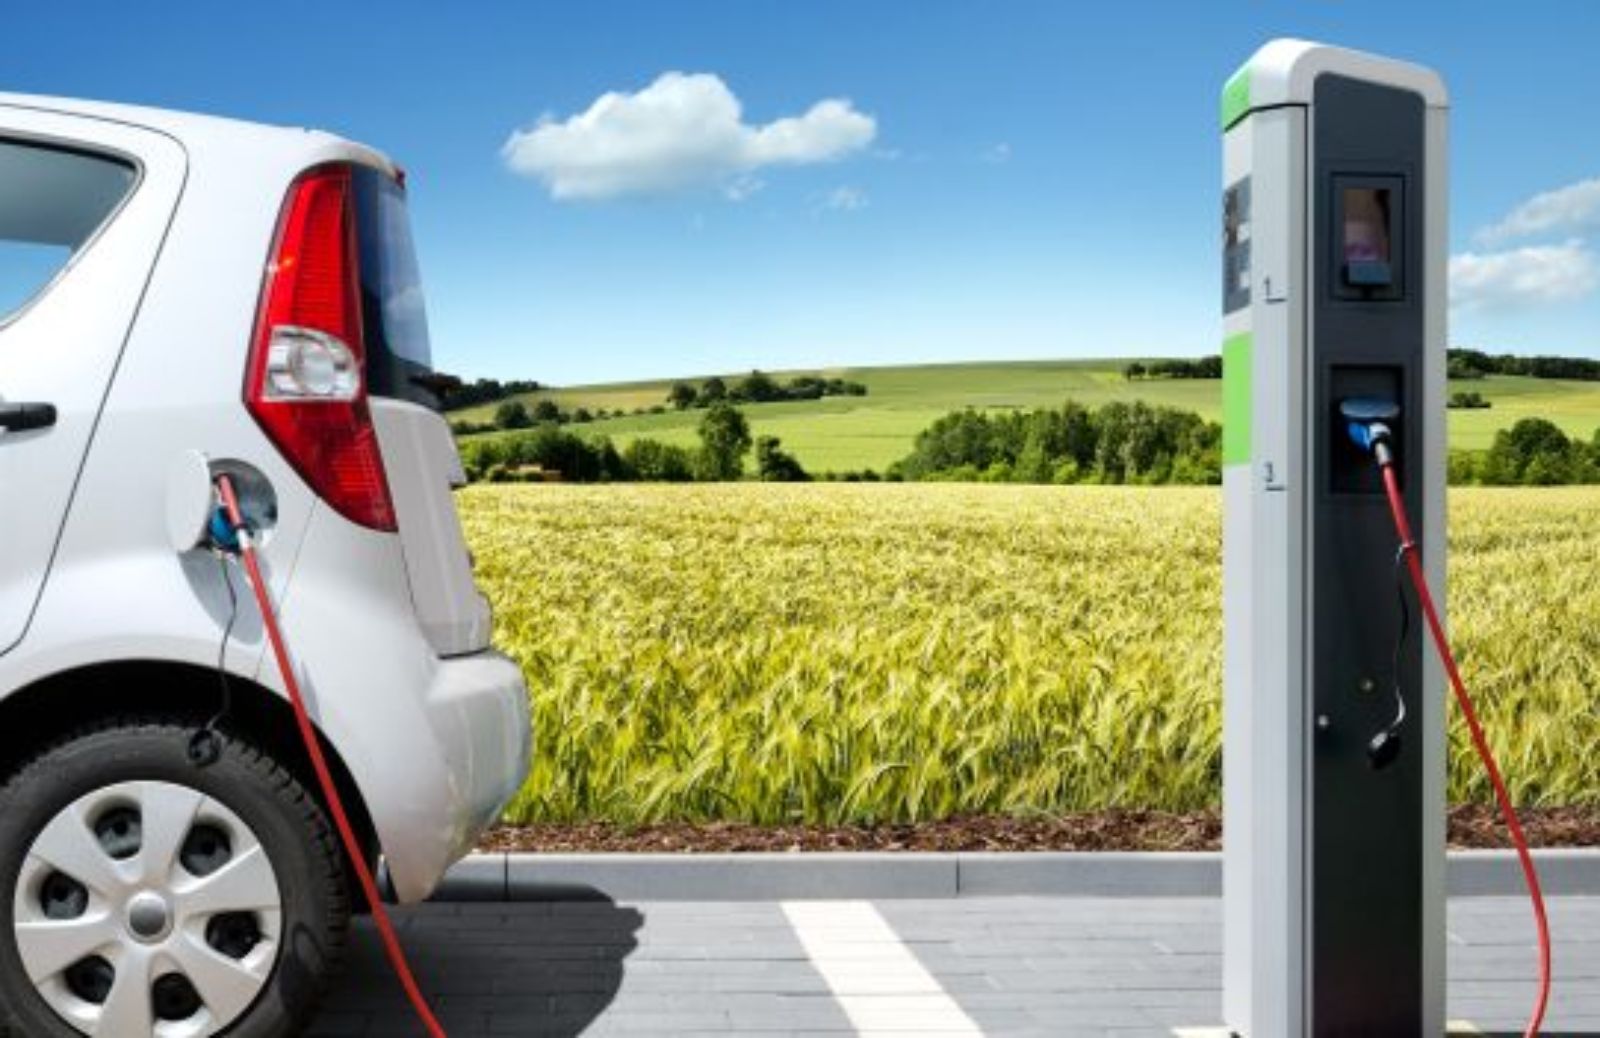 Come favorire la mobilità sostenibile guidando un’auto elettrica